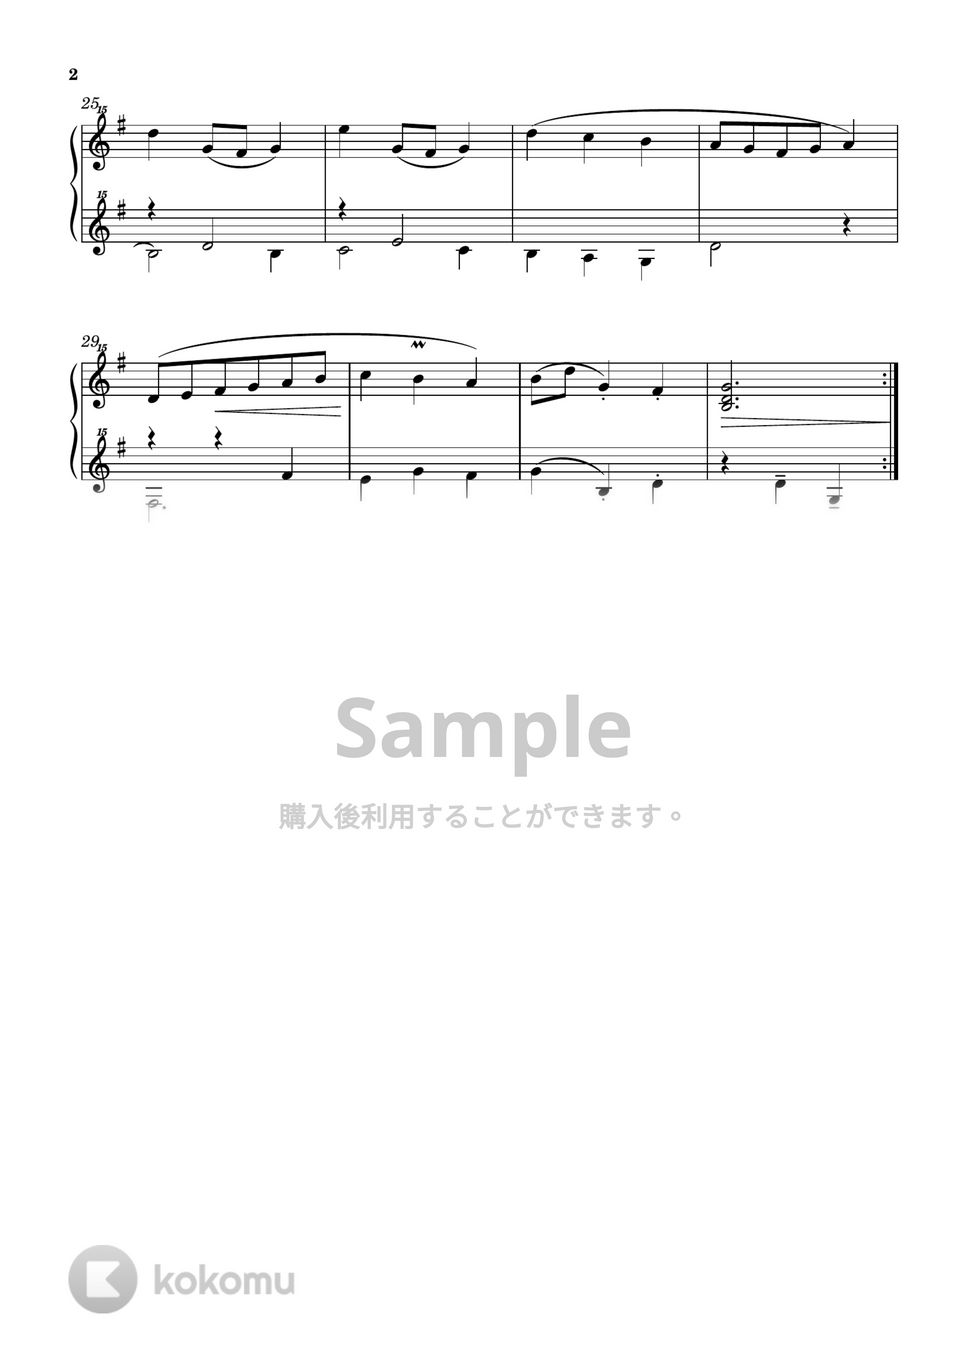 バッハ / クリスティアン・ペツォールト - メヌエット ト長調 BWV Anh.114 (トイピアノ / クラシック / 32鍵盤) by 川西三裕